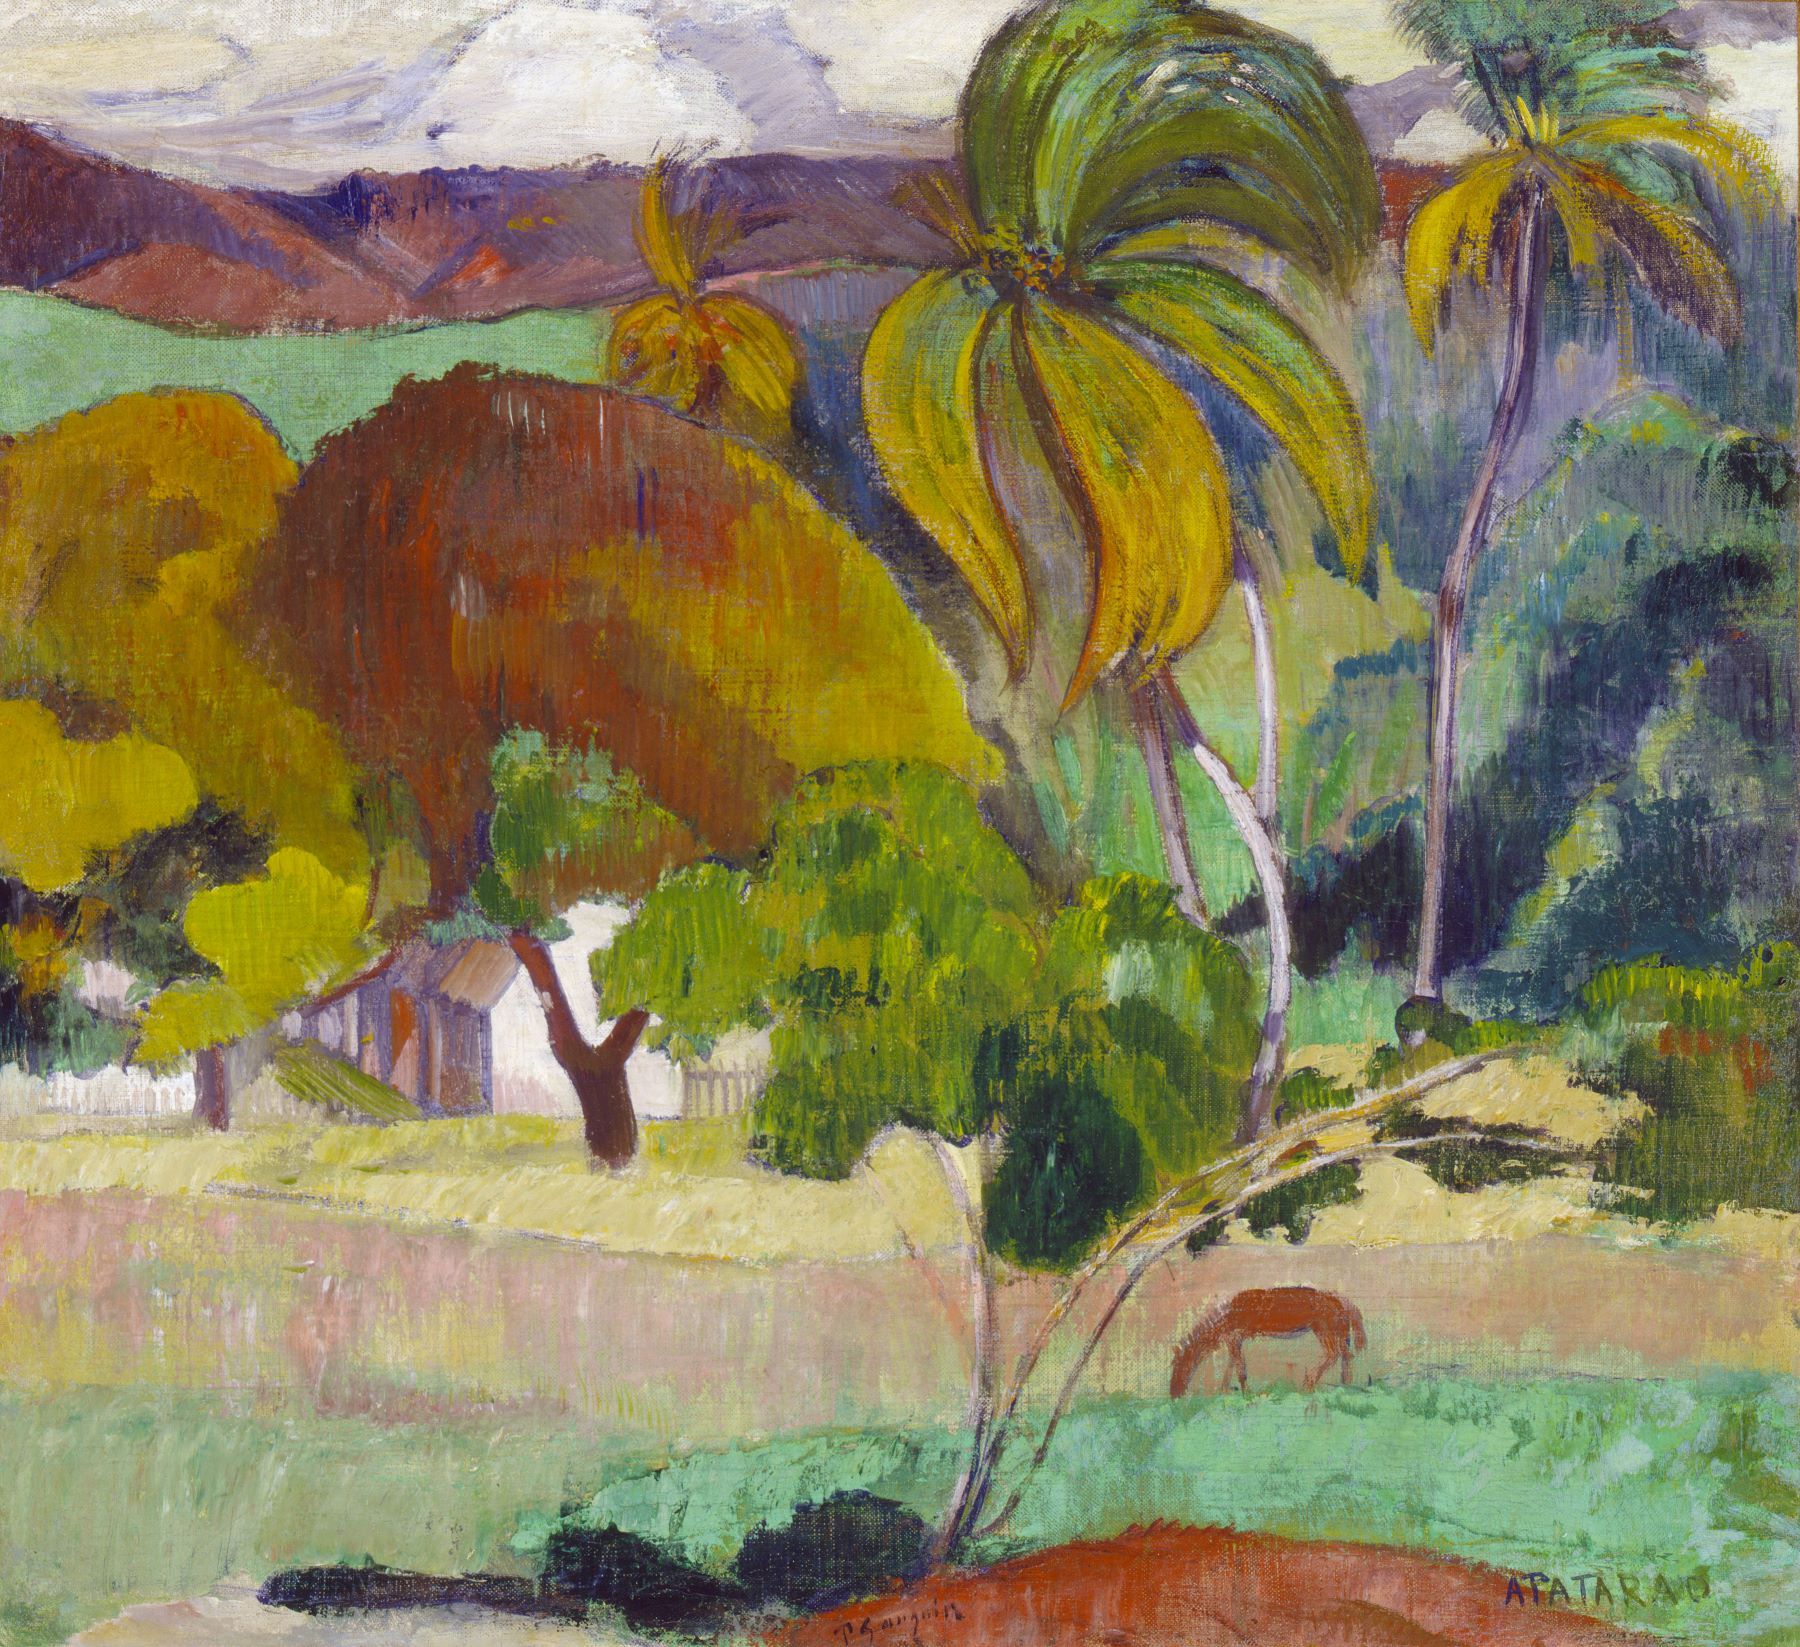 Apatarao Landskab fra Tahiti, c. 1893, Paul Gauguin © Ny Carlsberg Glyptotek